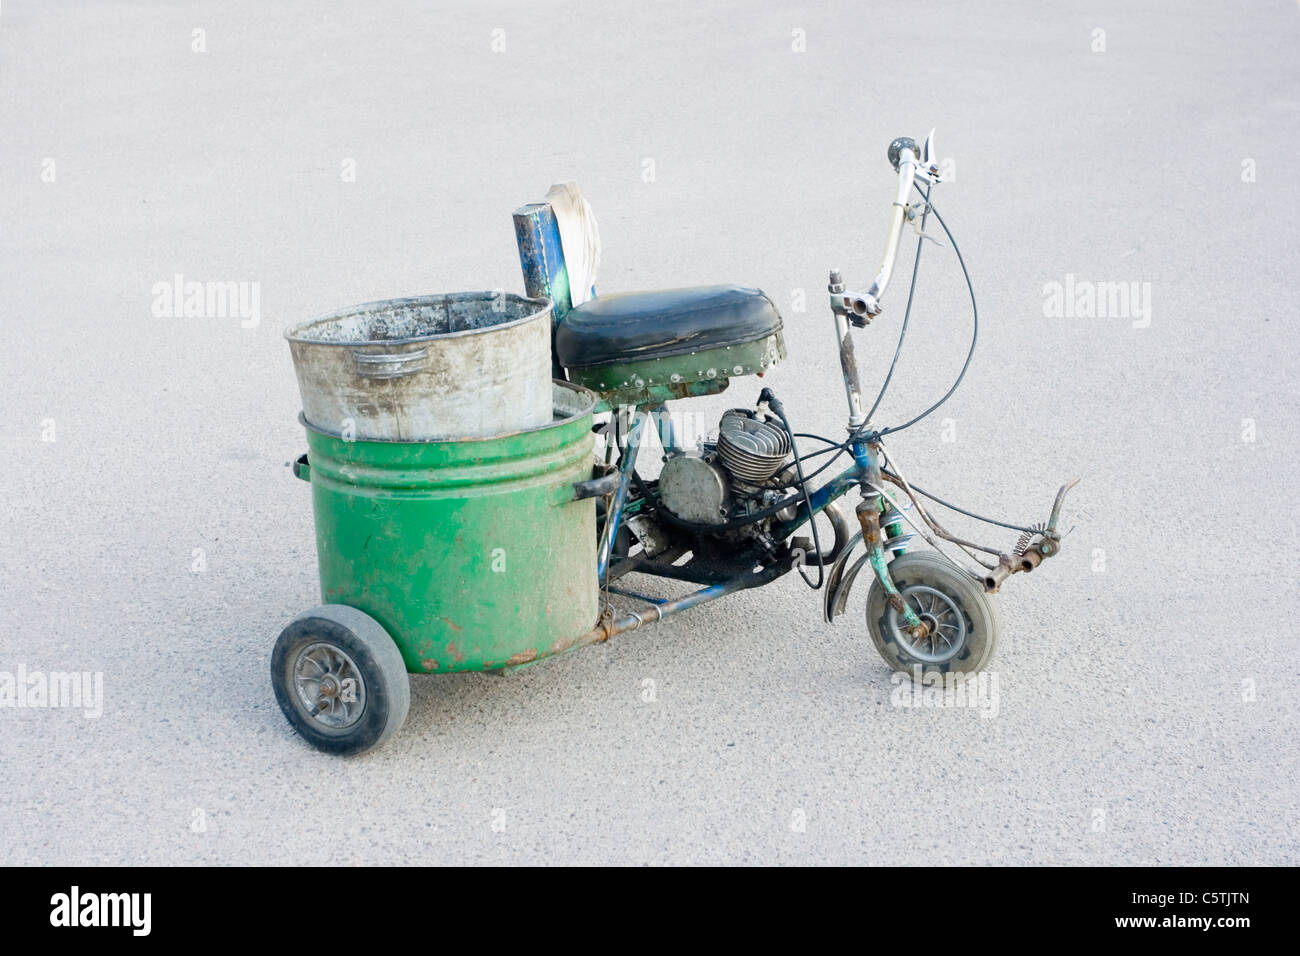 Scooter de tres ruedas caseras de diseño sencillo. Contra el telón de fondo del asfalto Foto de stock